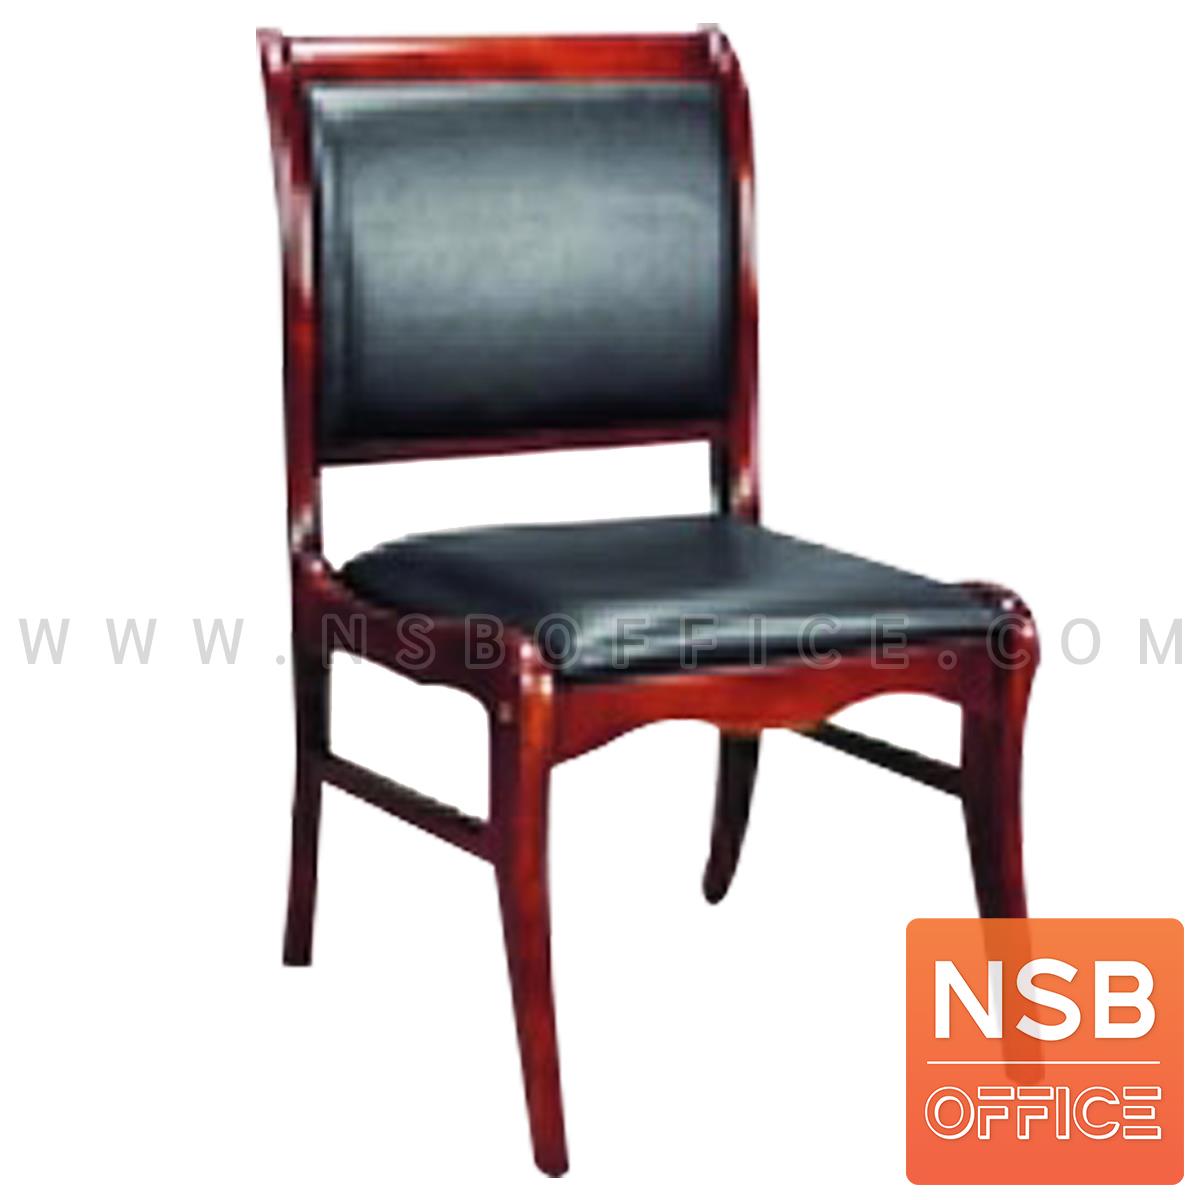 B29A416:เก้าอี้โมเดิร์นหนังเทียม รุ่น Karter (คาร์เตอร์) ขนาด 53W cm. โครงไม้